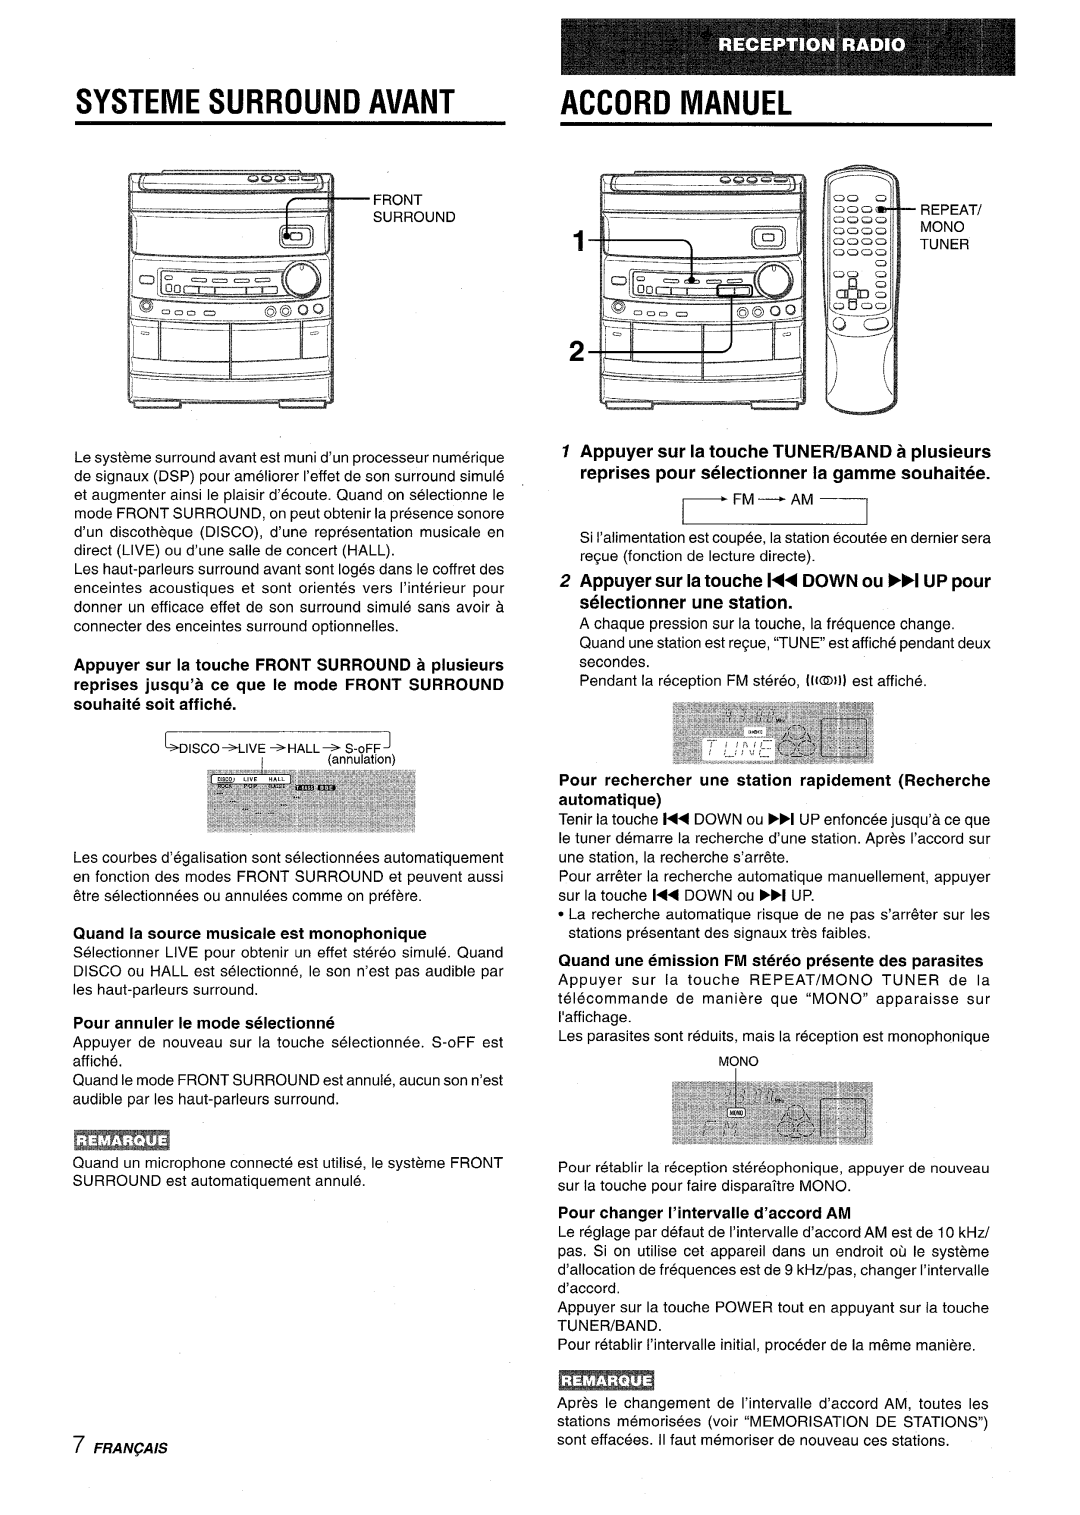 Aiwa CX-NV8000 manual Systemesurround Avant Accord Manuel, Fm - Am, Quand la source musicale est monophonique 